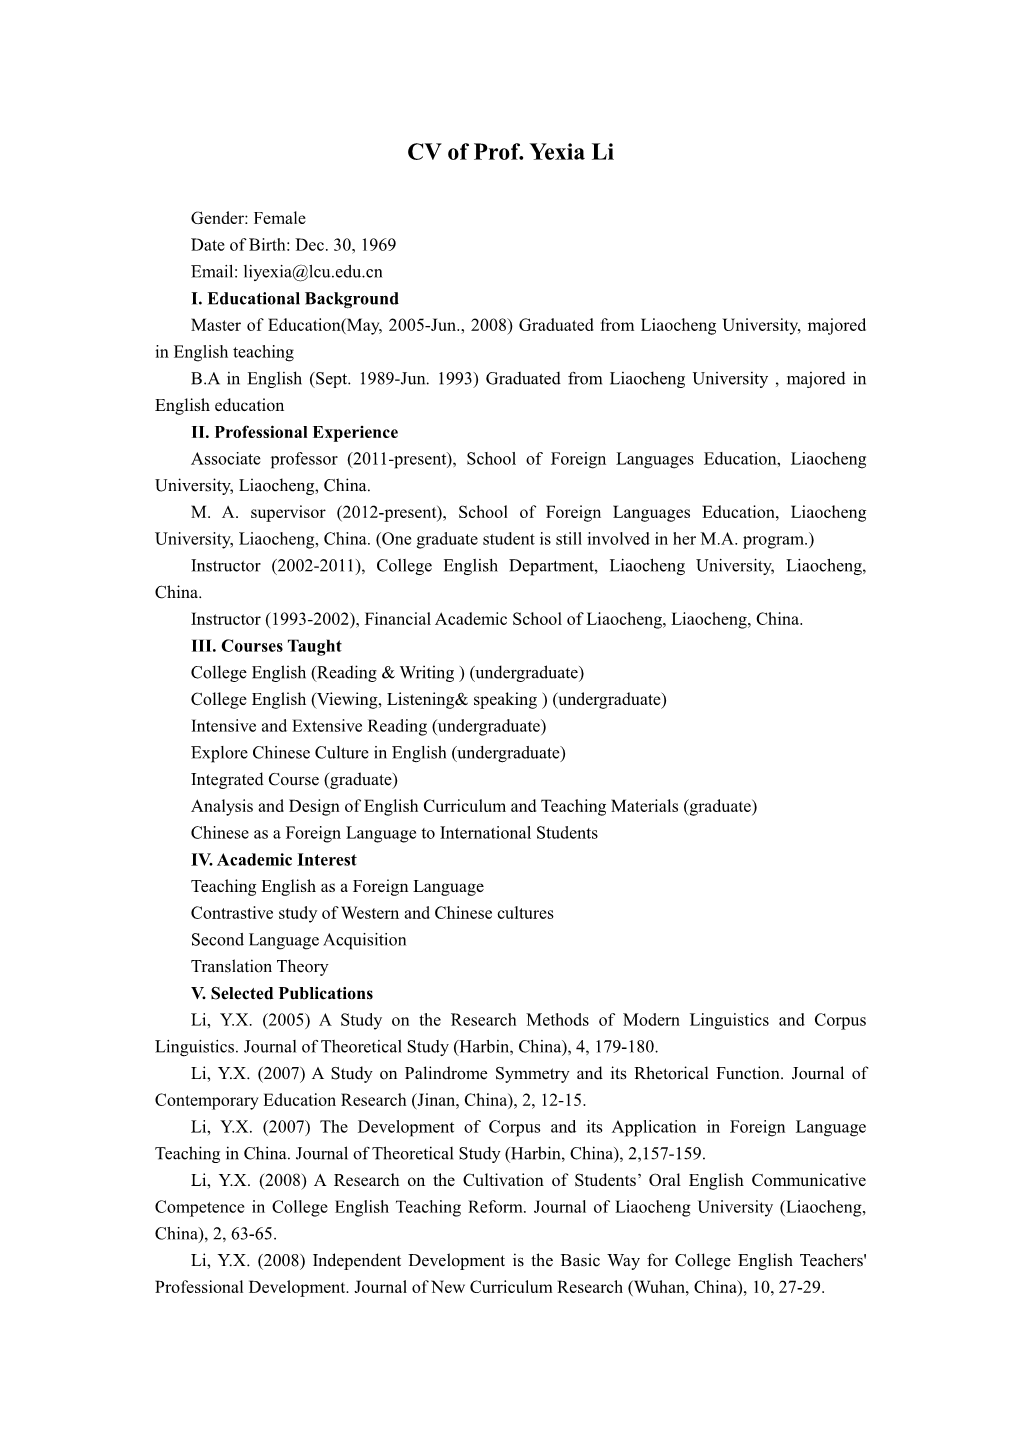 CV of Prof. Yexia Li